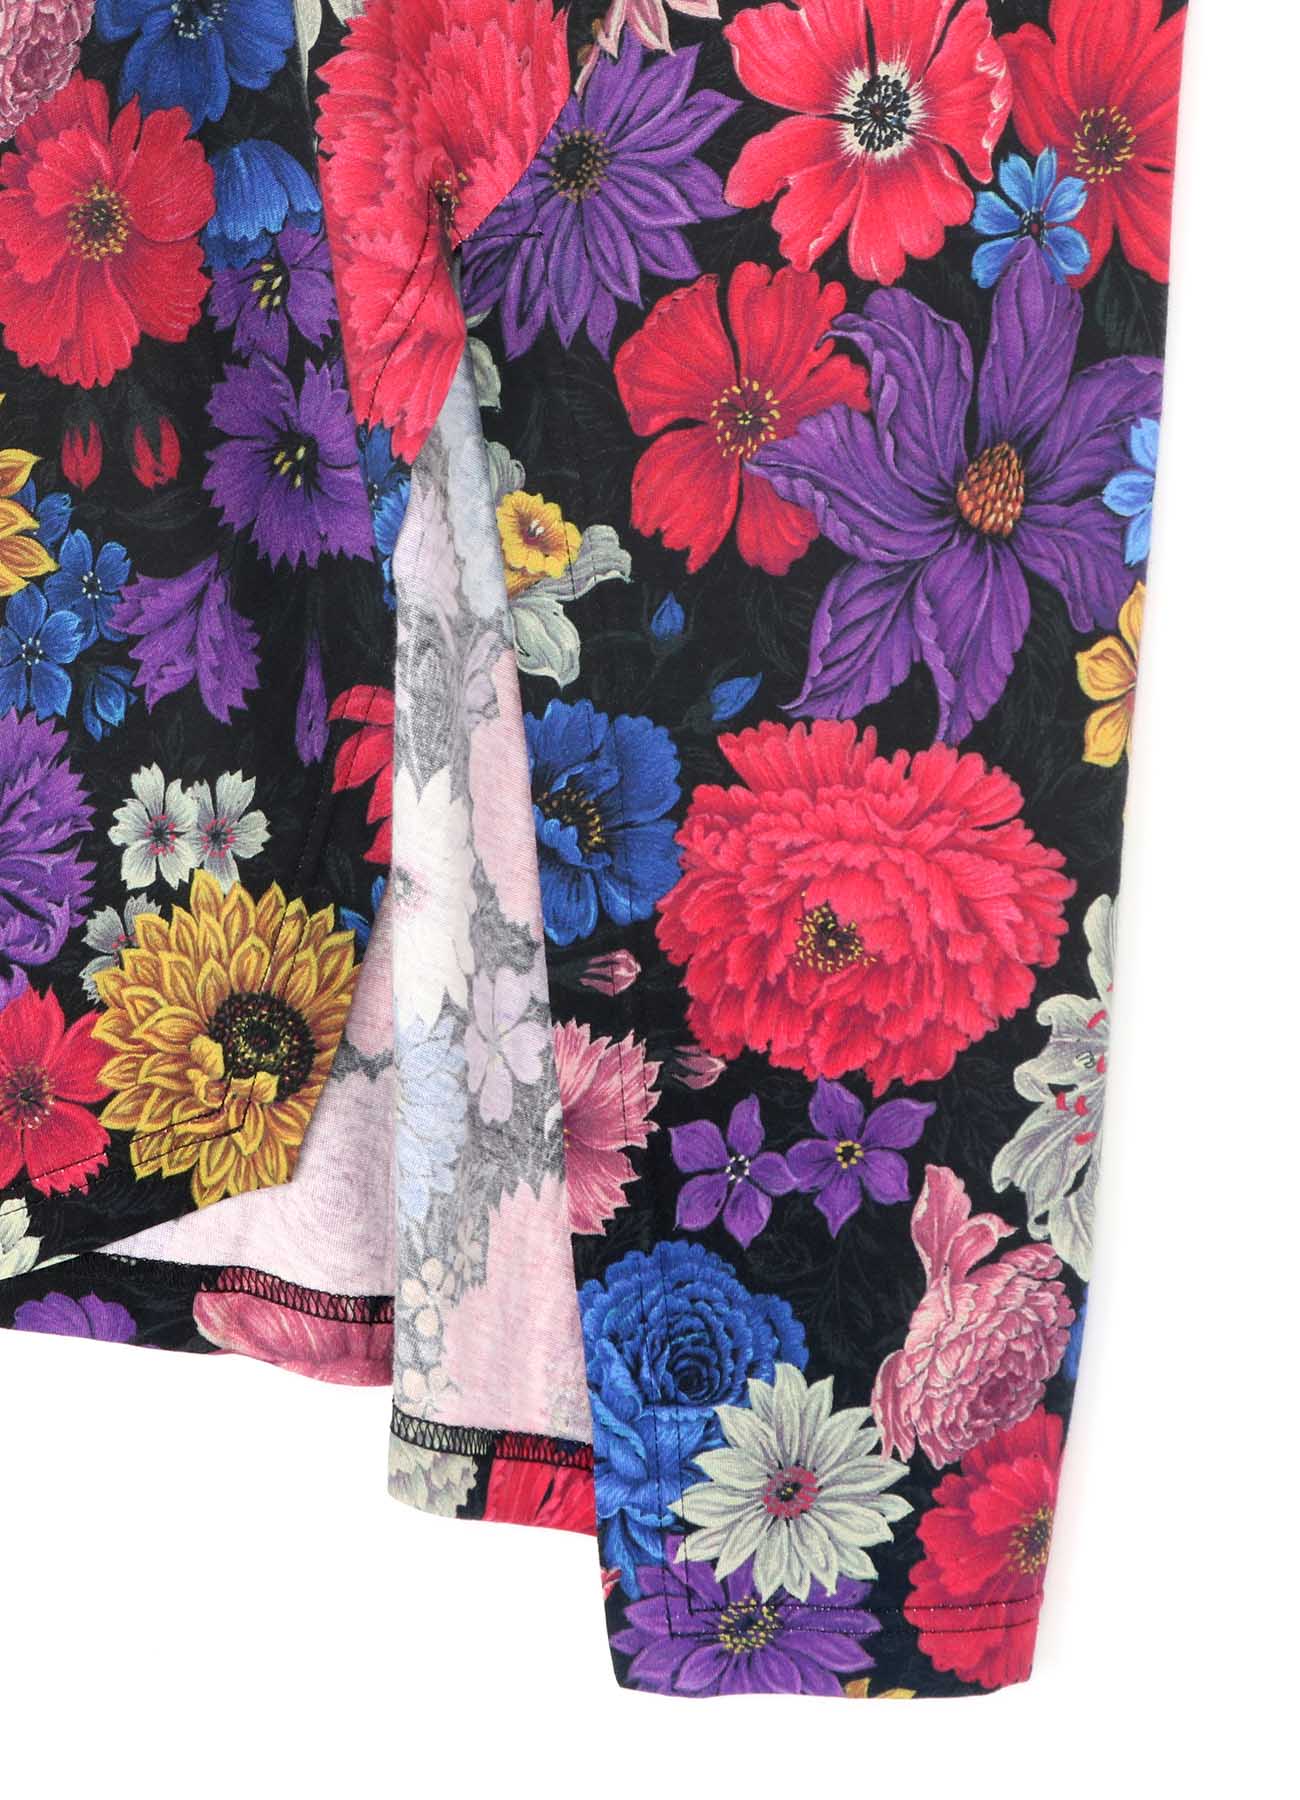 Flowers in Full Bloom Print Sleeveless Shirt with Slit in Hem